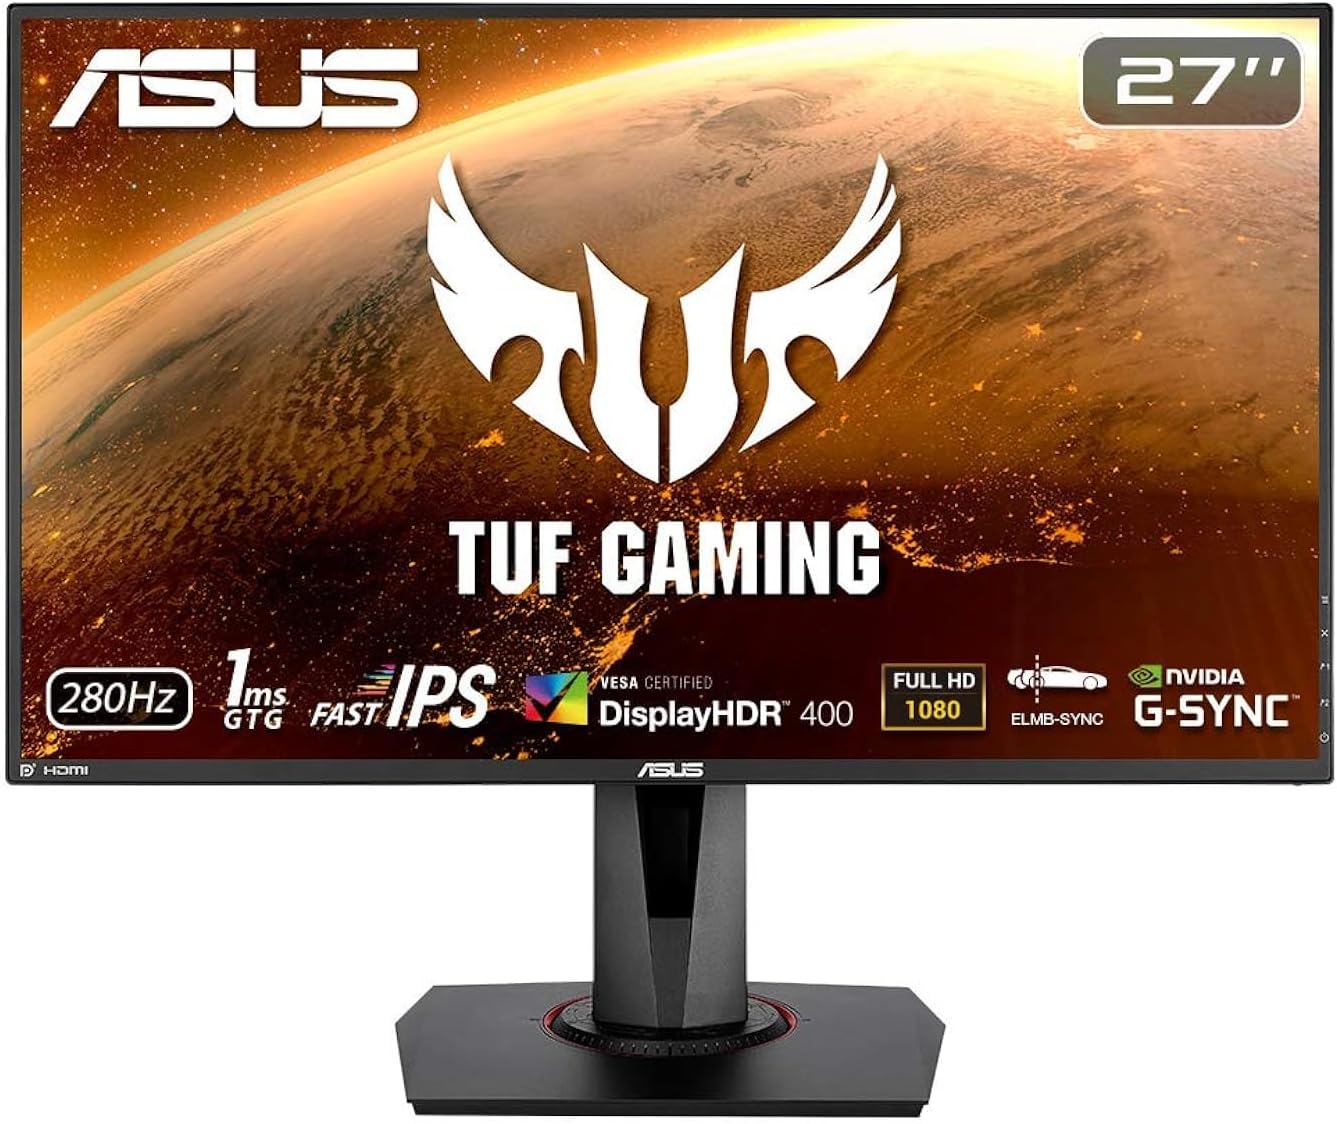 ASUS TUF Gaming VG279QM  27 inch FullHD (1920 x 1080), Fast IPS, 280Hz Gaming Monitor